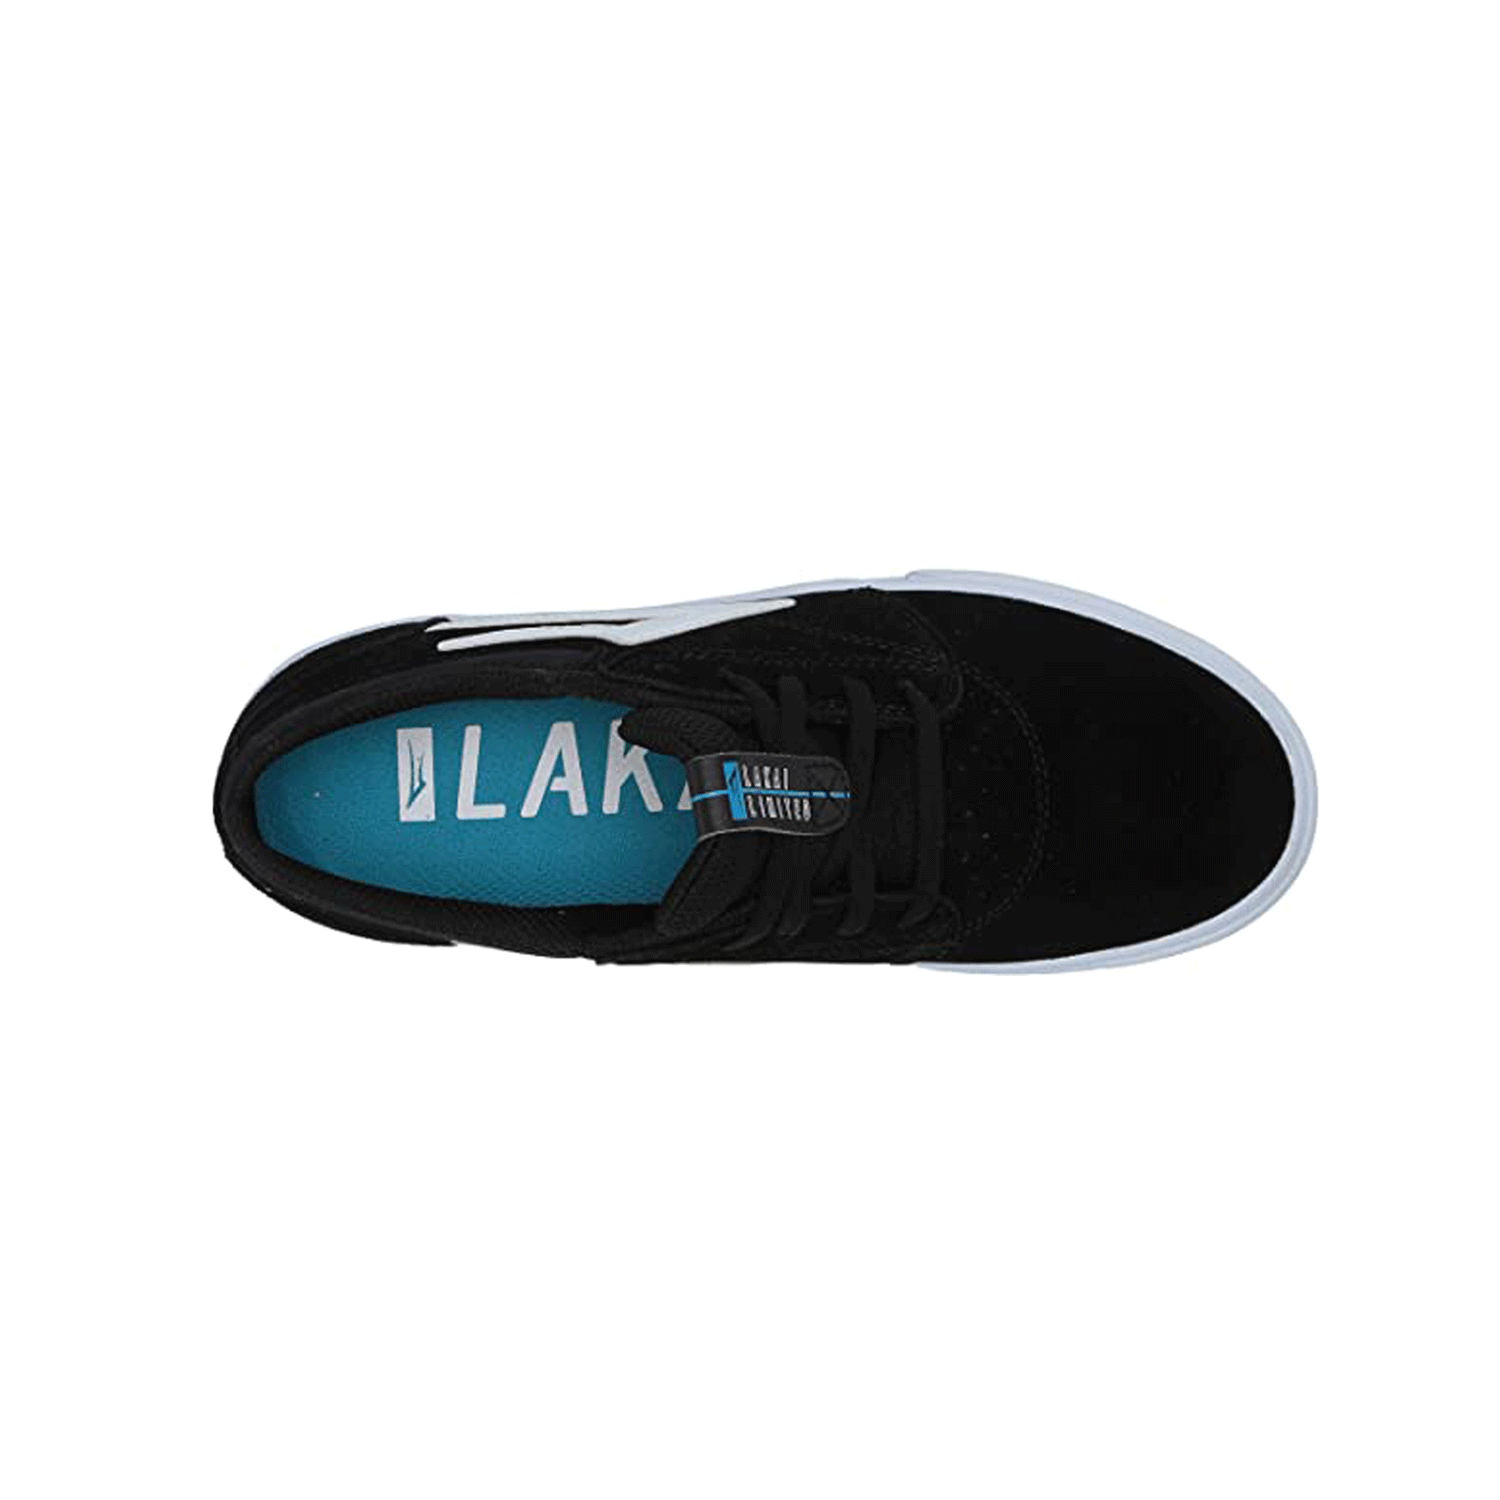 Lakai - Griffin Suede Shoes - Black SALE